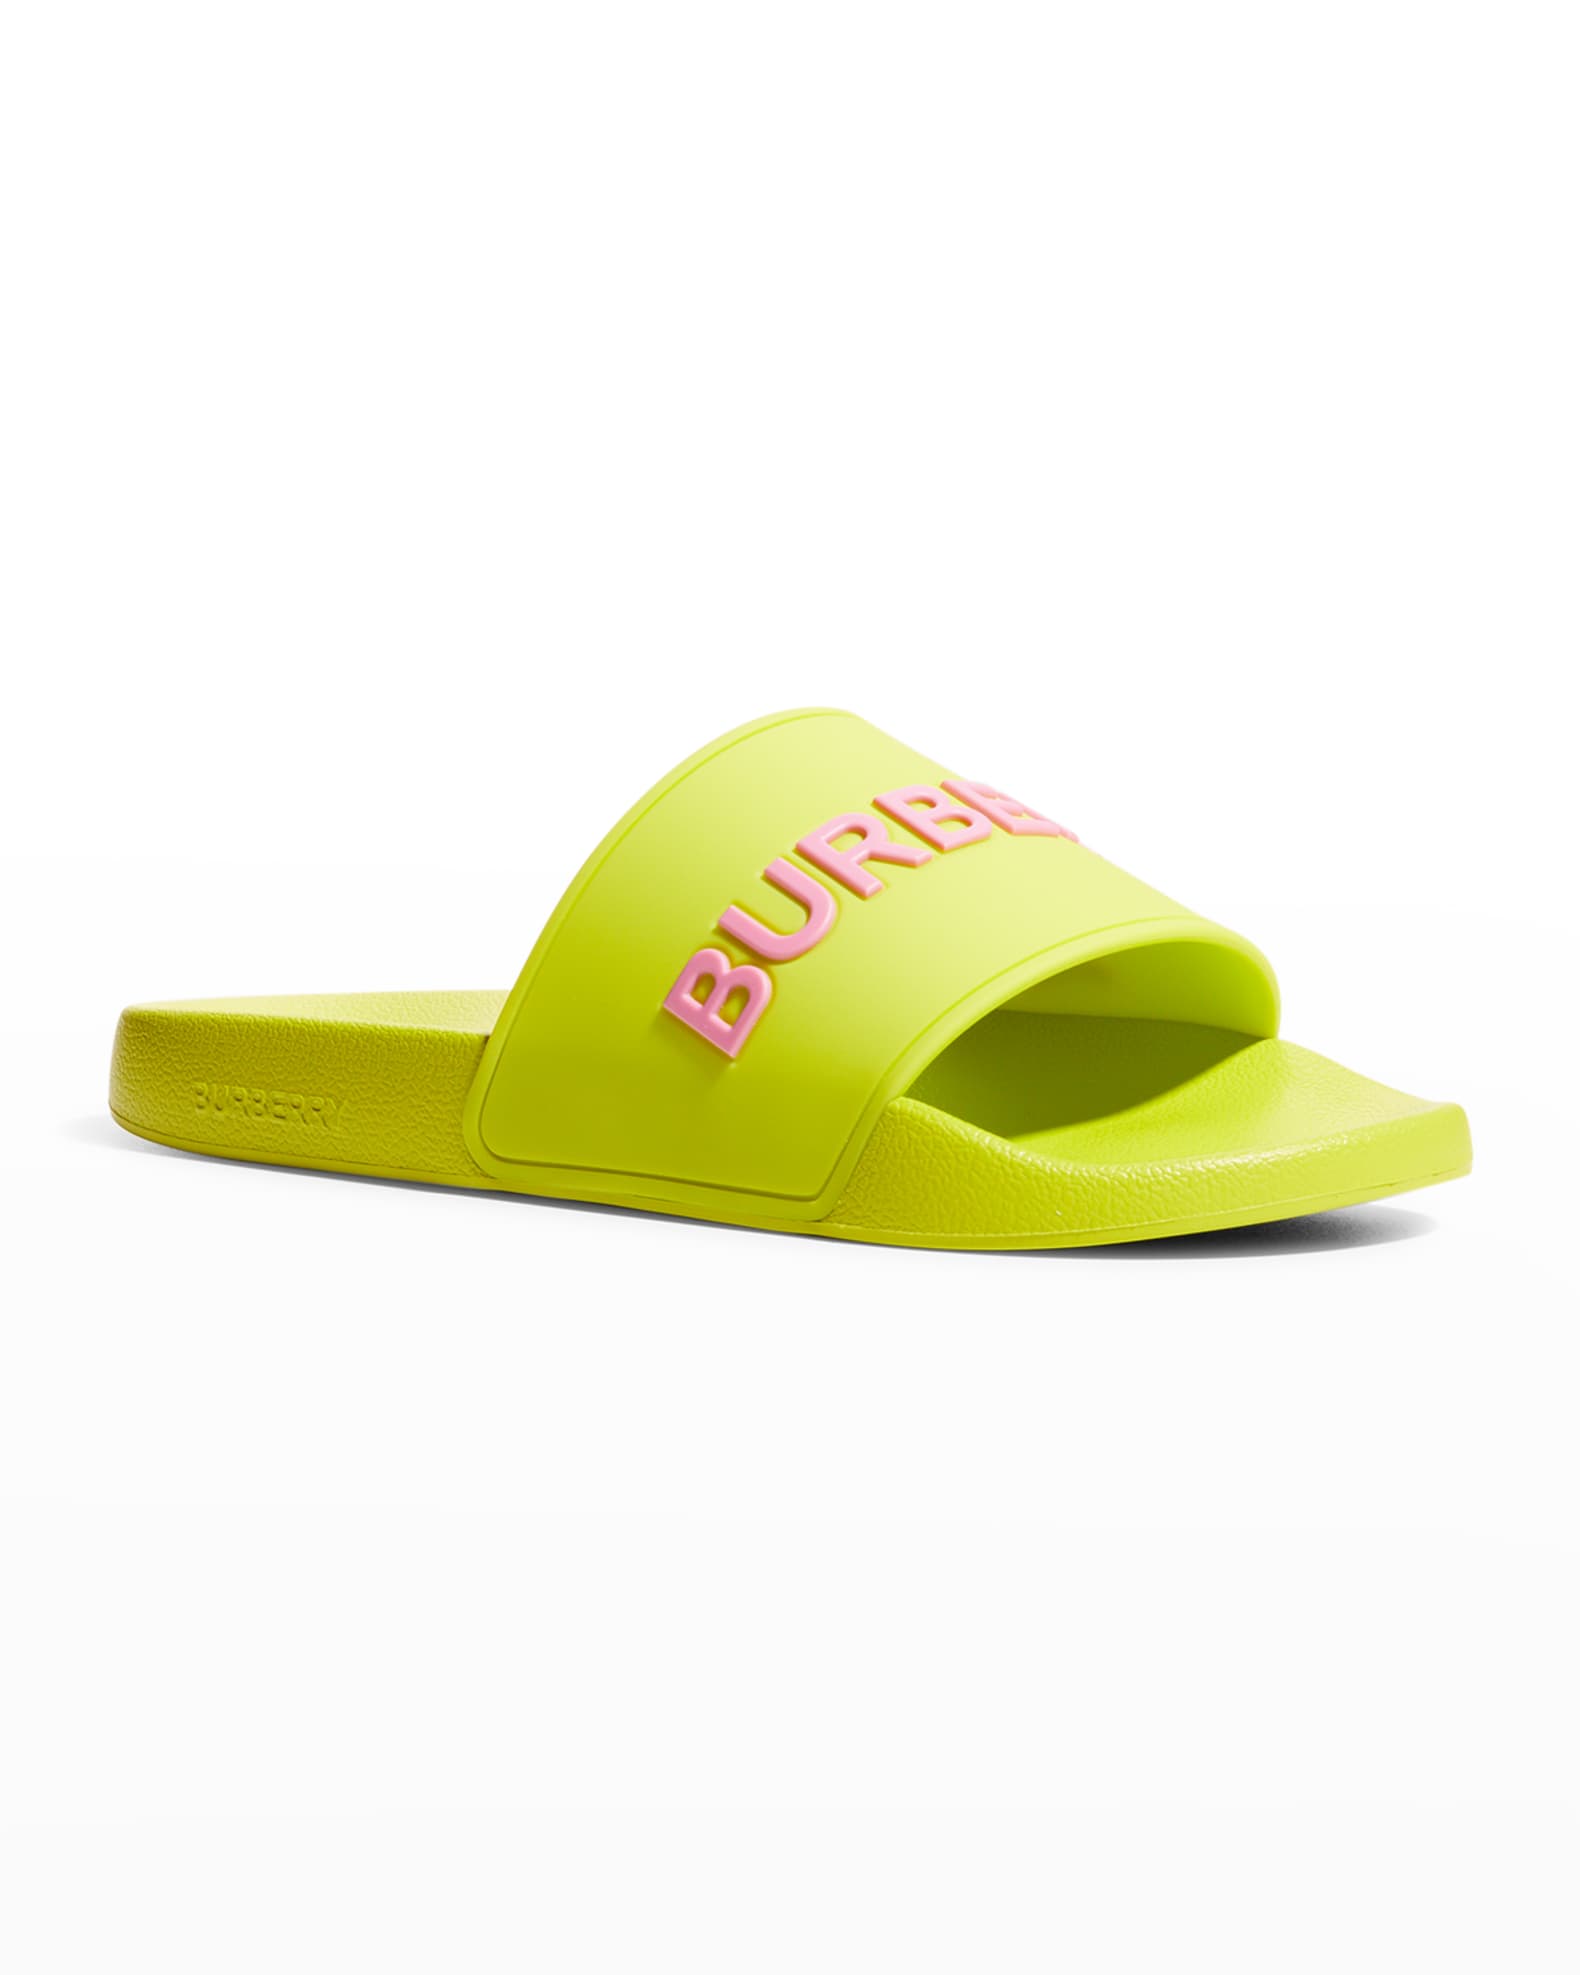 Burberry Furley Logo Slide Sandals | Neiman Marcus